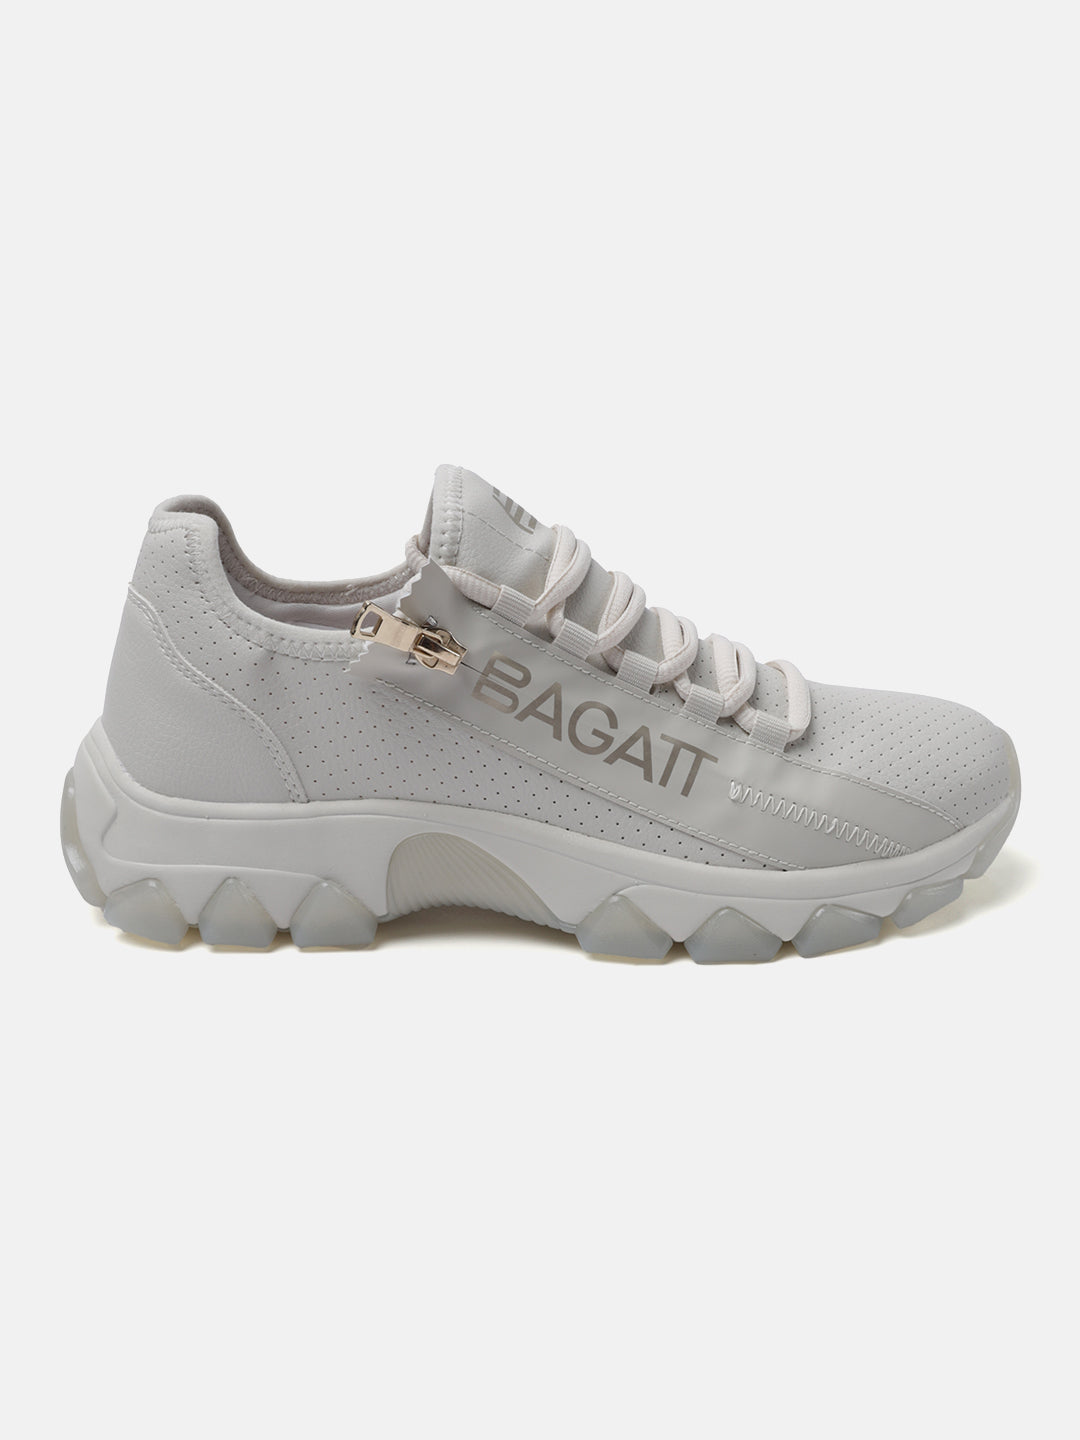 BAGATT Beige Mid Top Sneakers